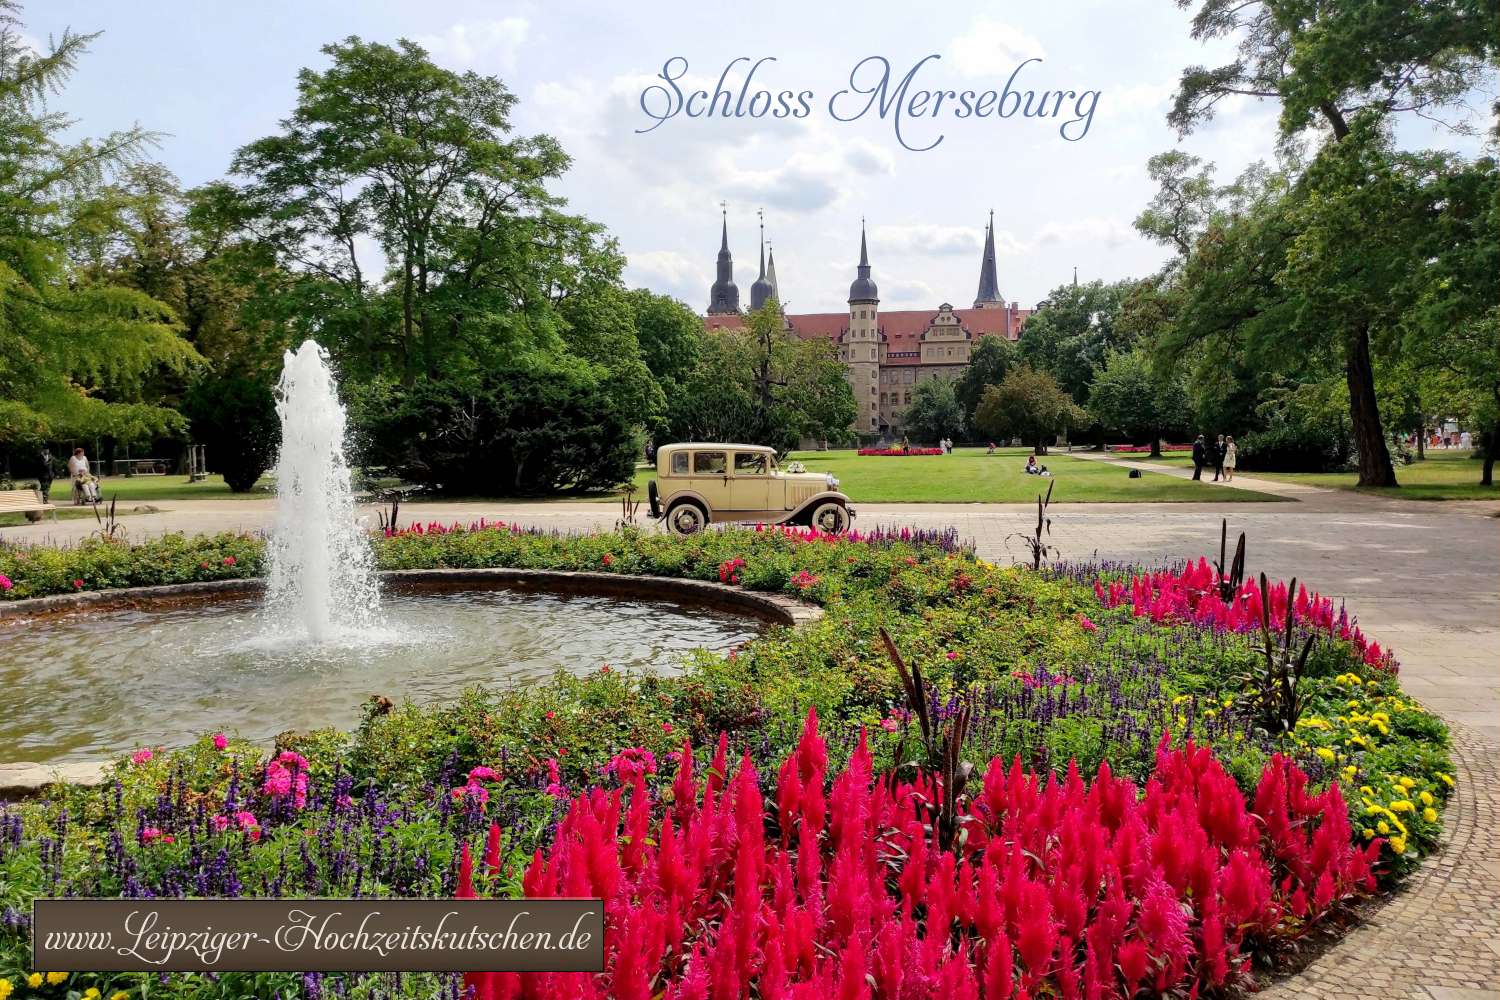 Heiraten in Merseburg: Hochzeitsfotograf mit Oldtimer im Schlossgarten mit Renaissanceschloss und Merseburger Dom im Hintergrund am Fluss Saale in Sachsen-Anhalt